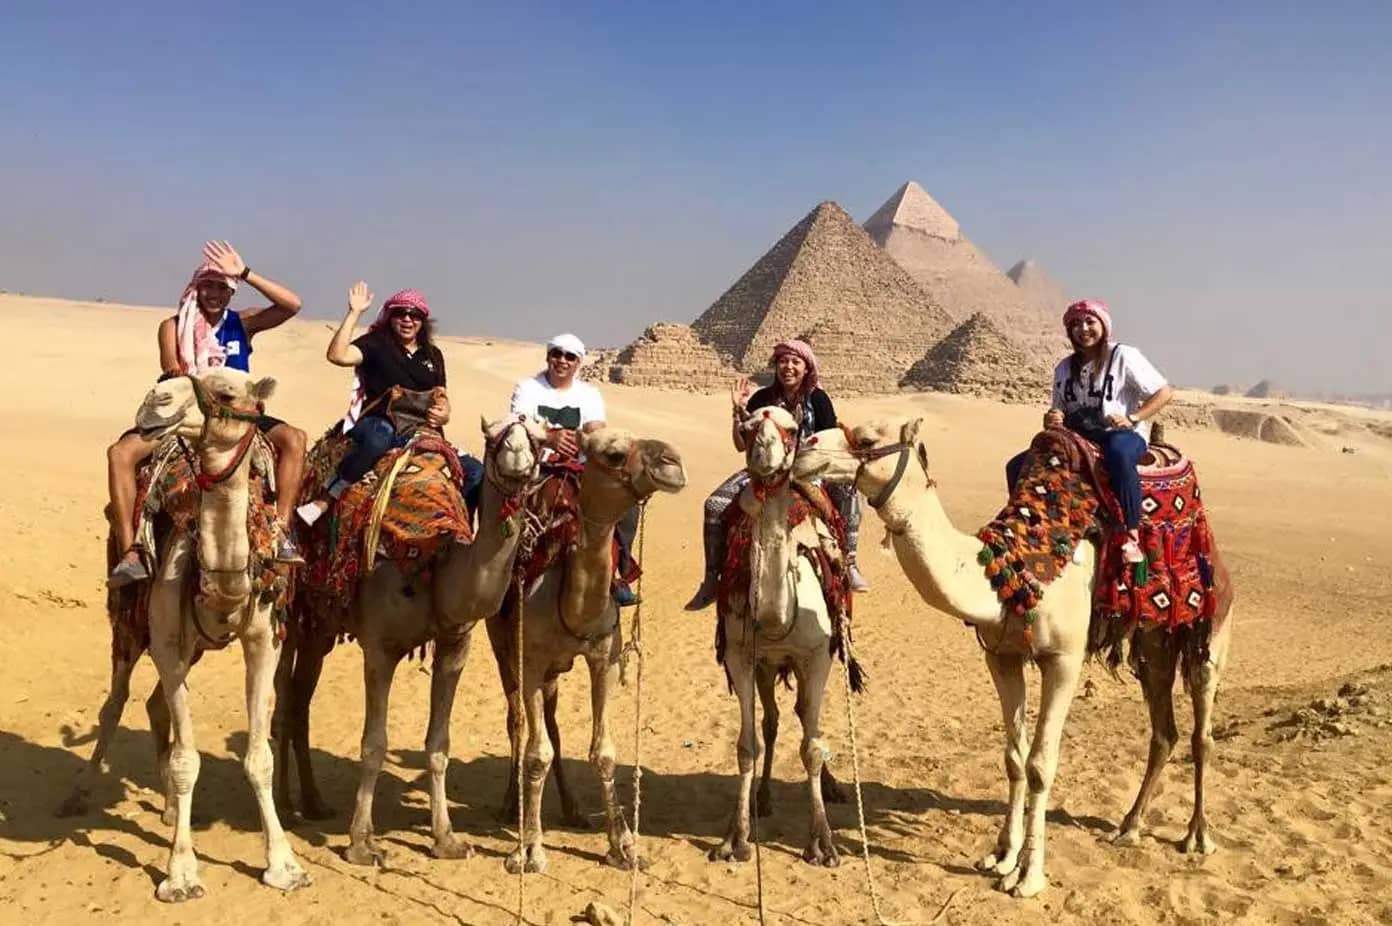 Pyramids of Egypt tour